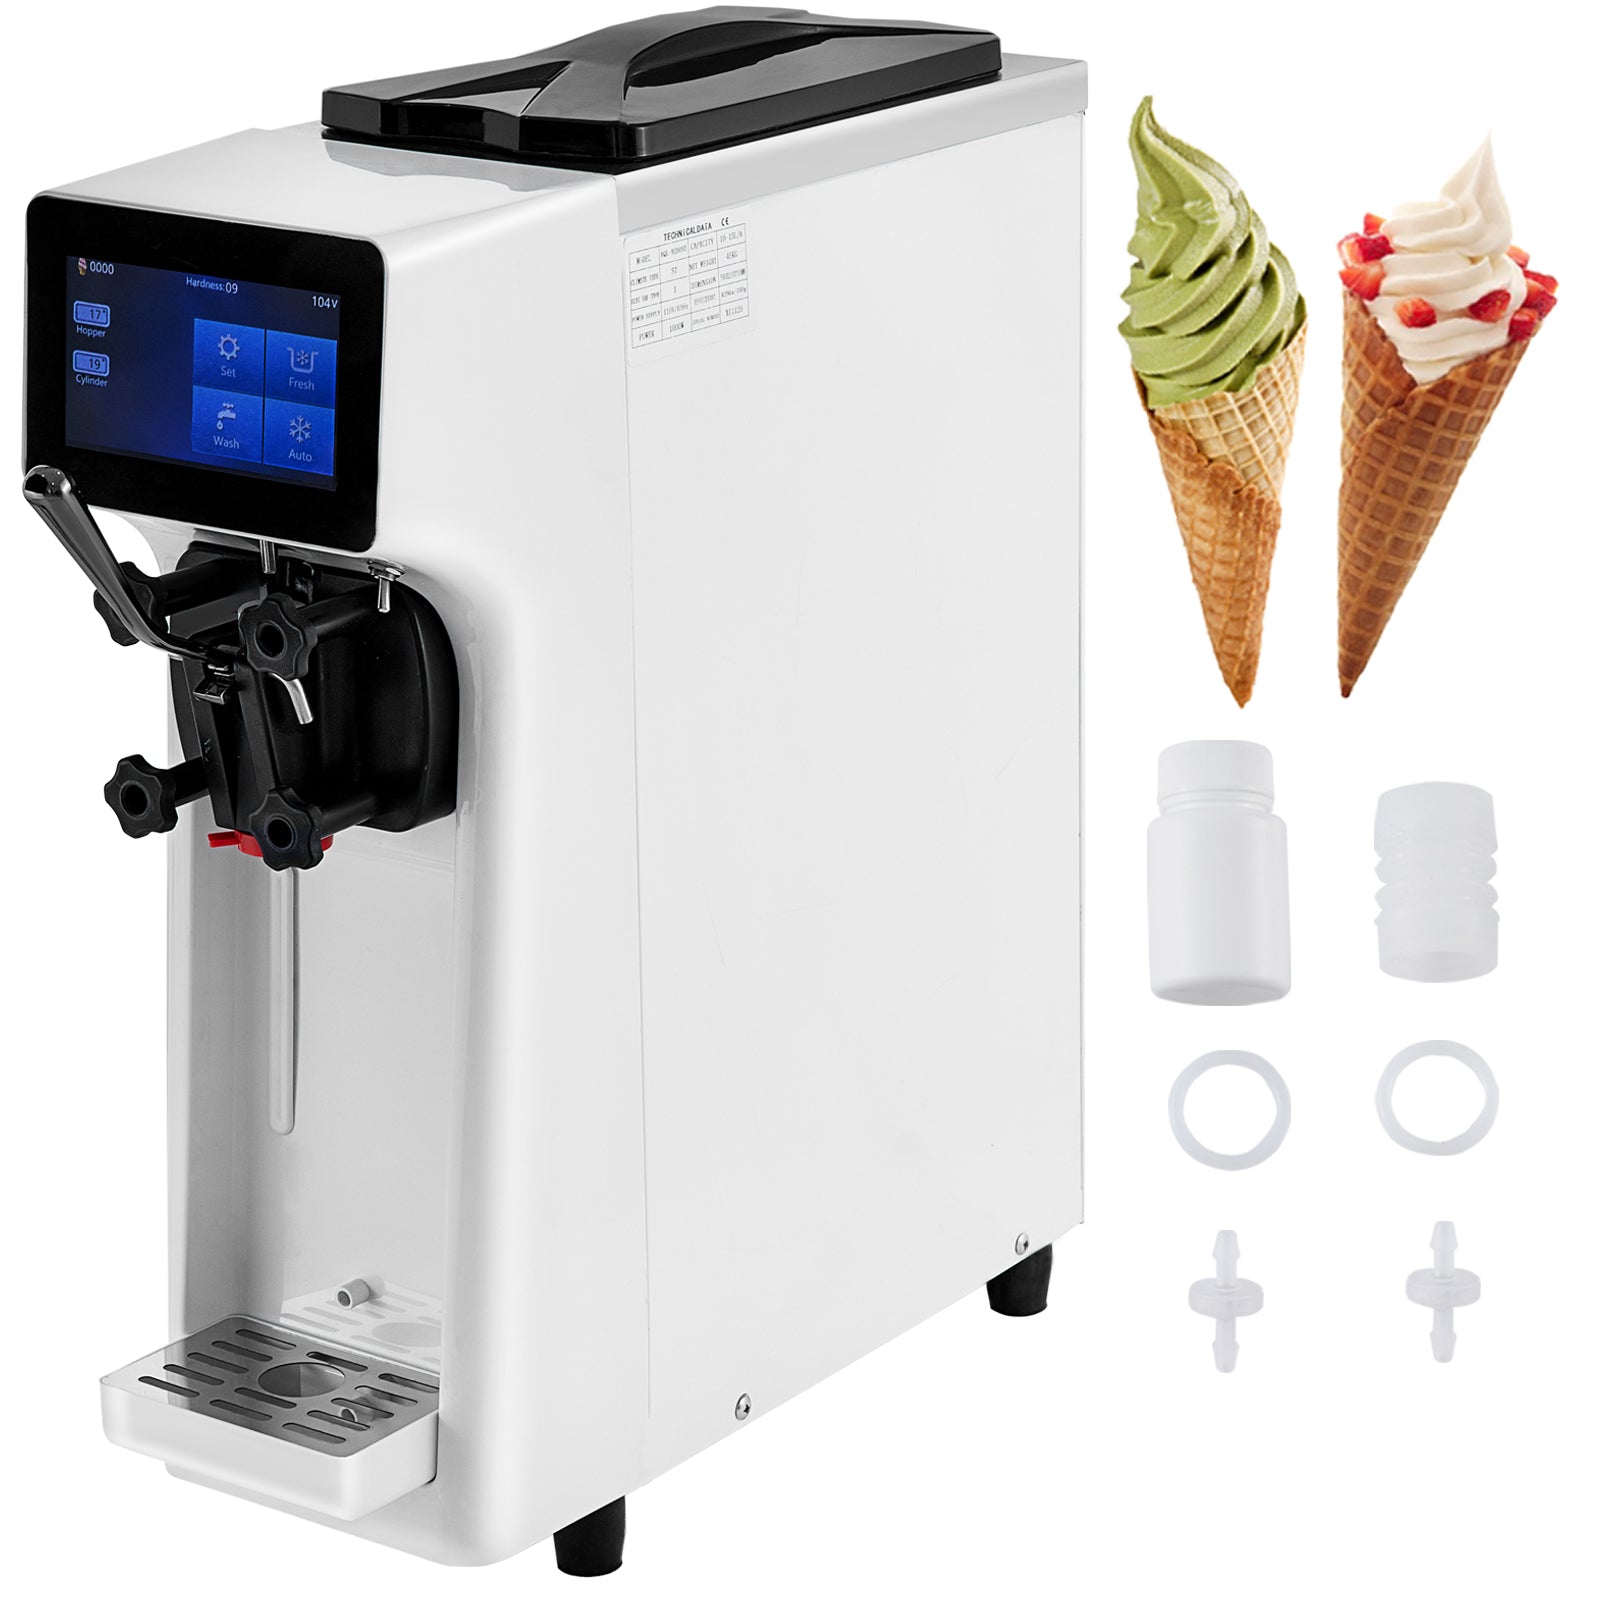  BZD Máquina comercial para hacer helados, 2200 W, 3 sabores,  máquina de helado suave de 5.3 a 7.4 galones/HAuto Clean pantalla táctil  LCD Panel la máquina de helado ideal para cafeterías